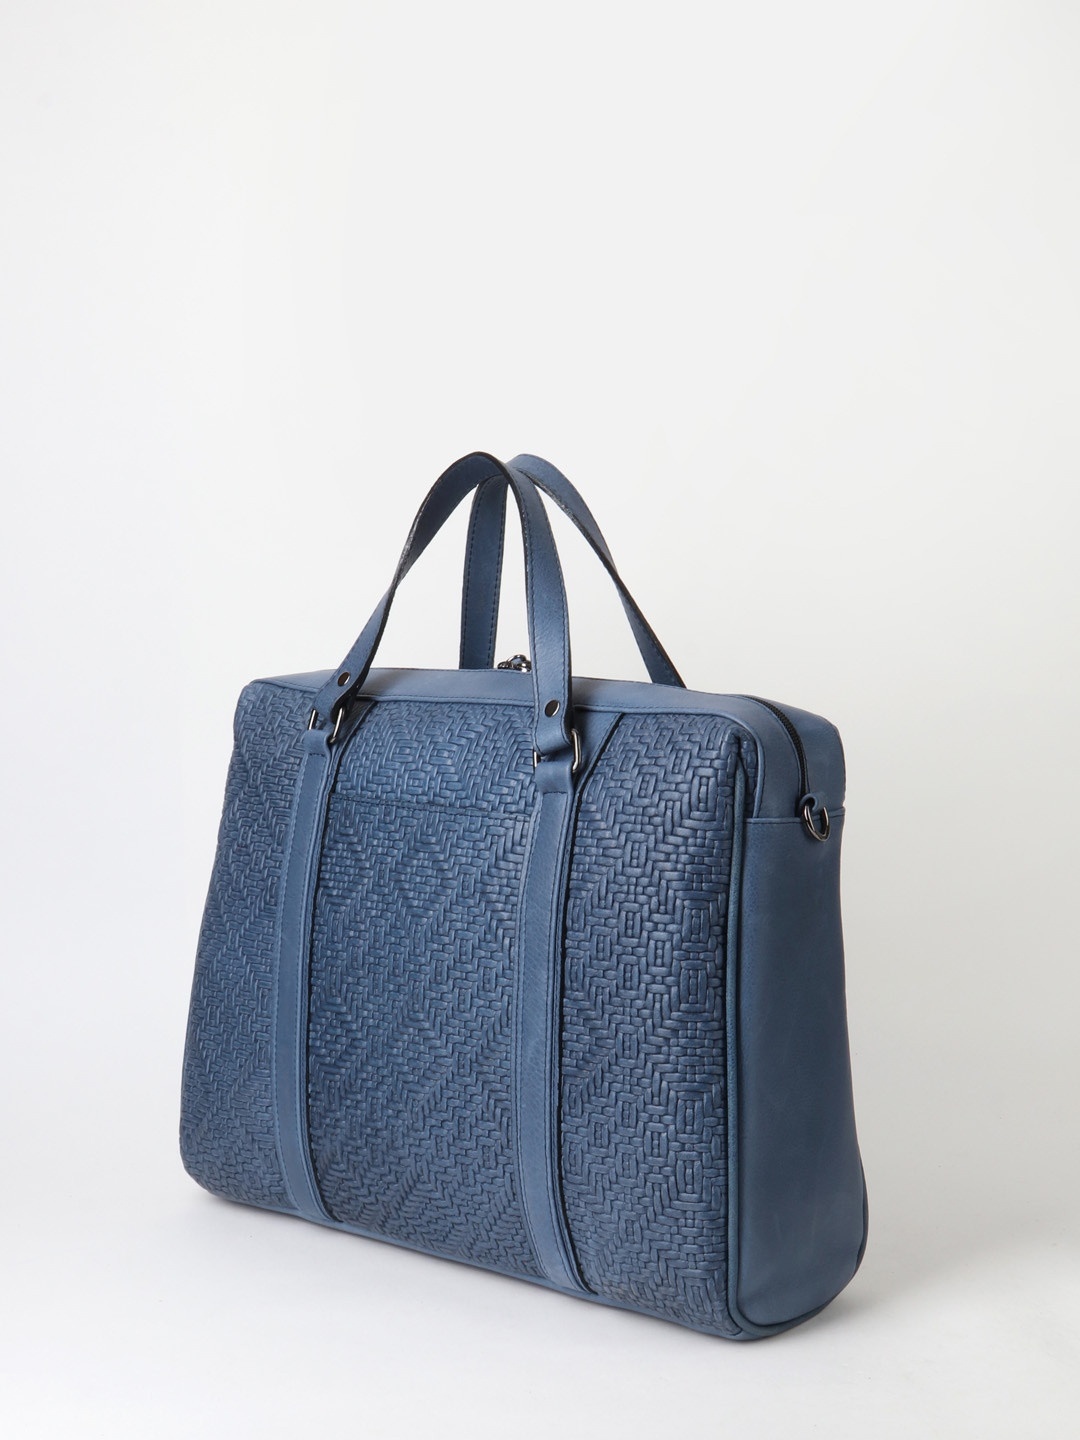 Фото Деловая сумка из натуральной плетеной кожи синего оттенка Деловые сумки (А4)